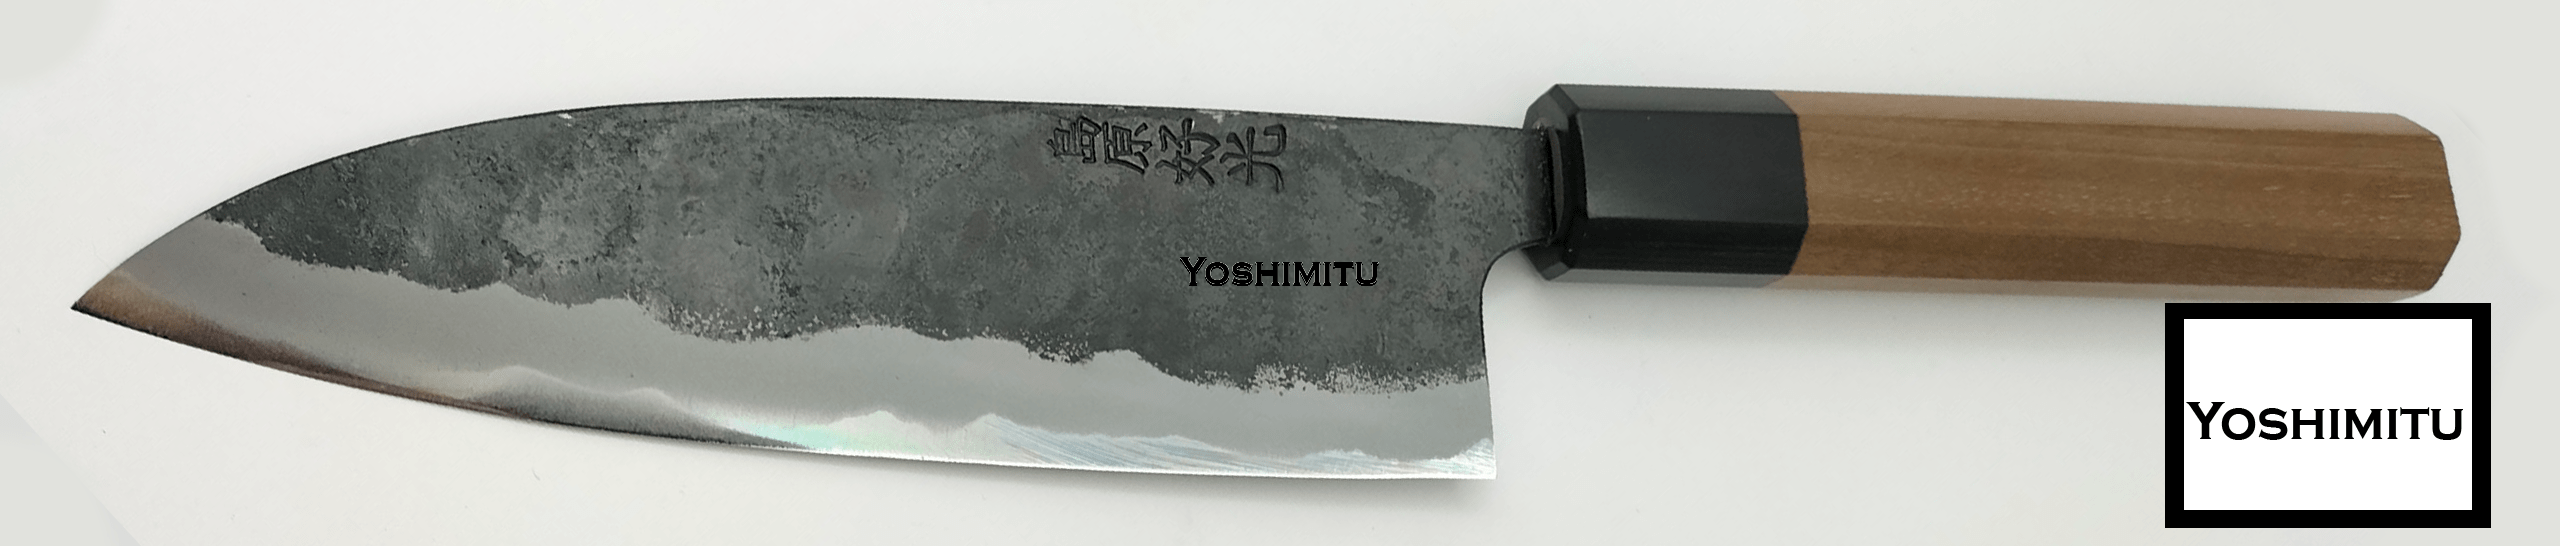 yoshimitu